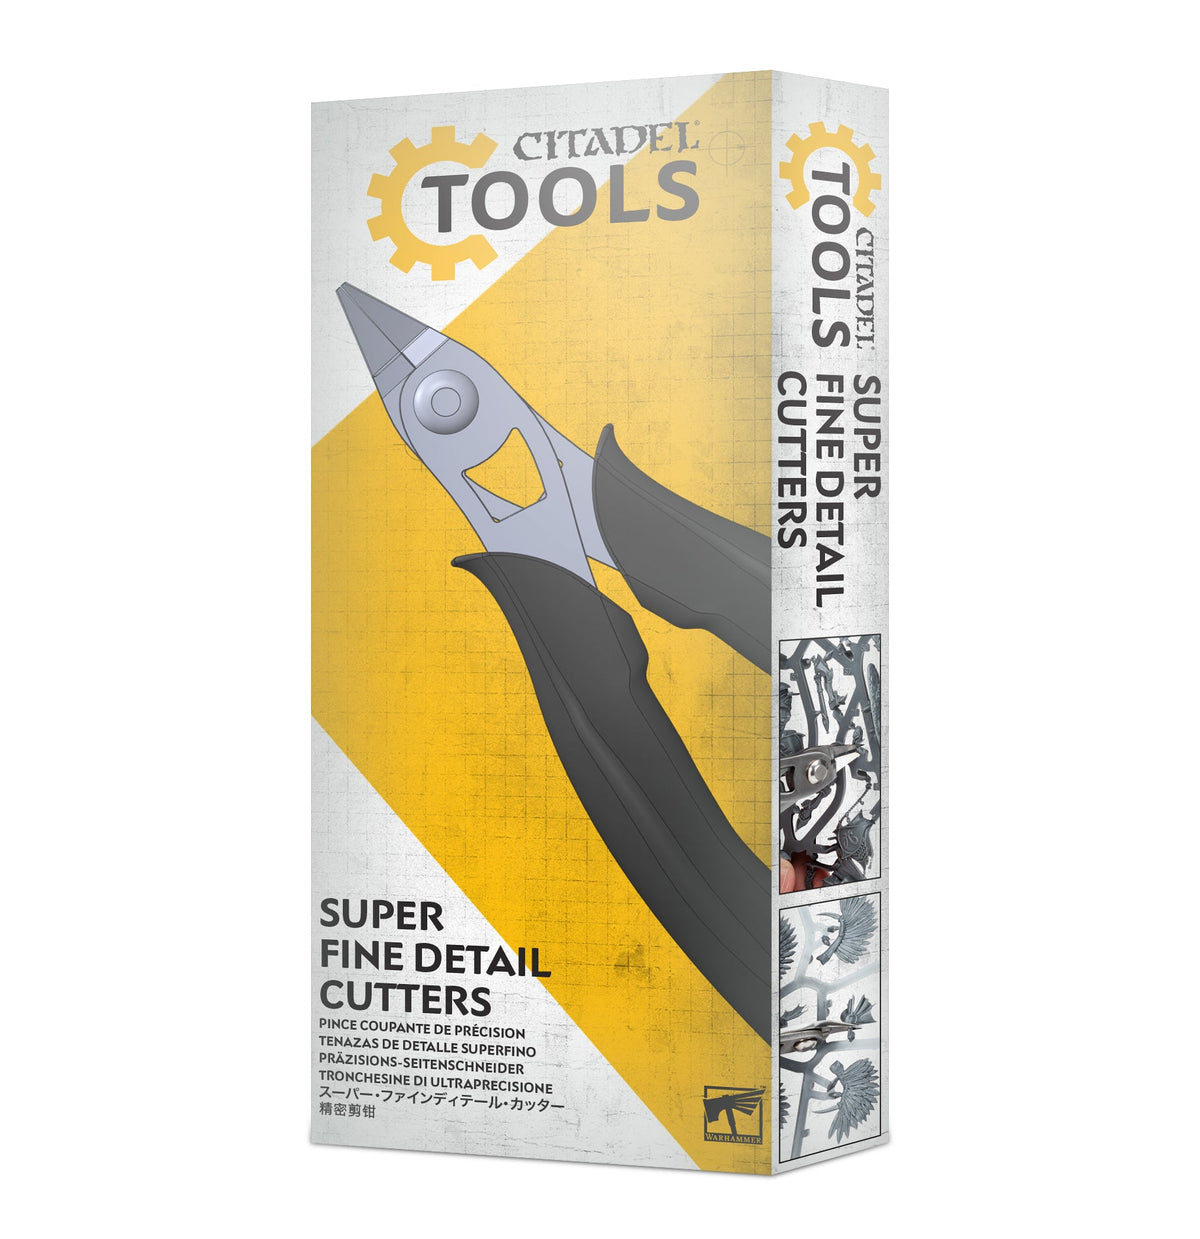 Super Fine Detail Cutters (Citadel Tools)